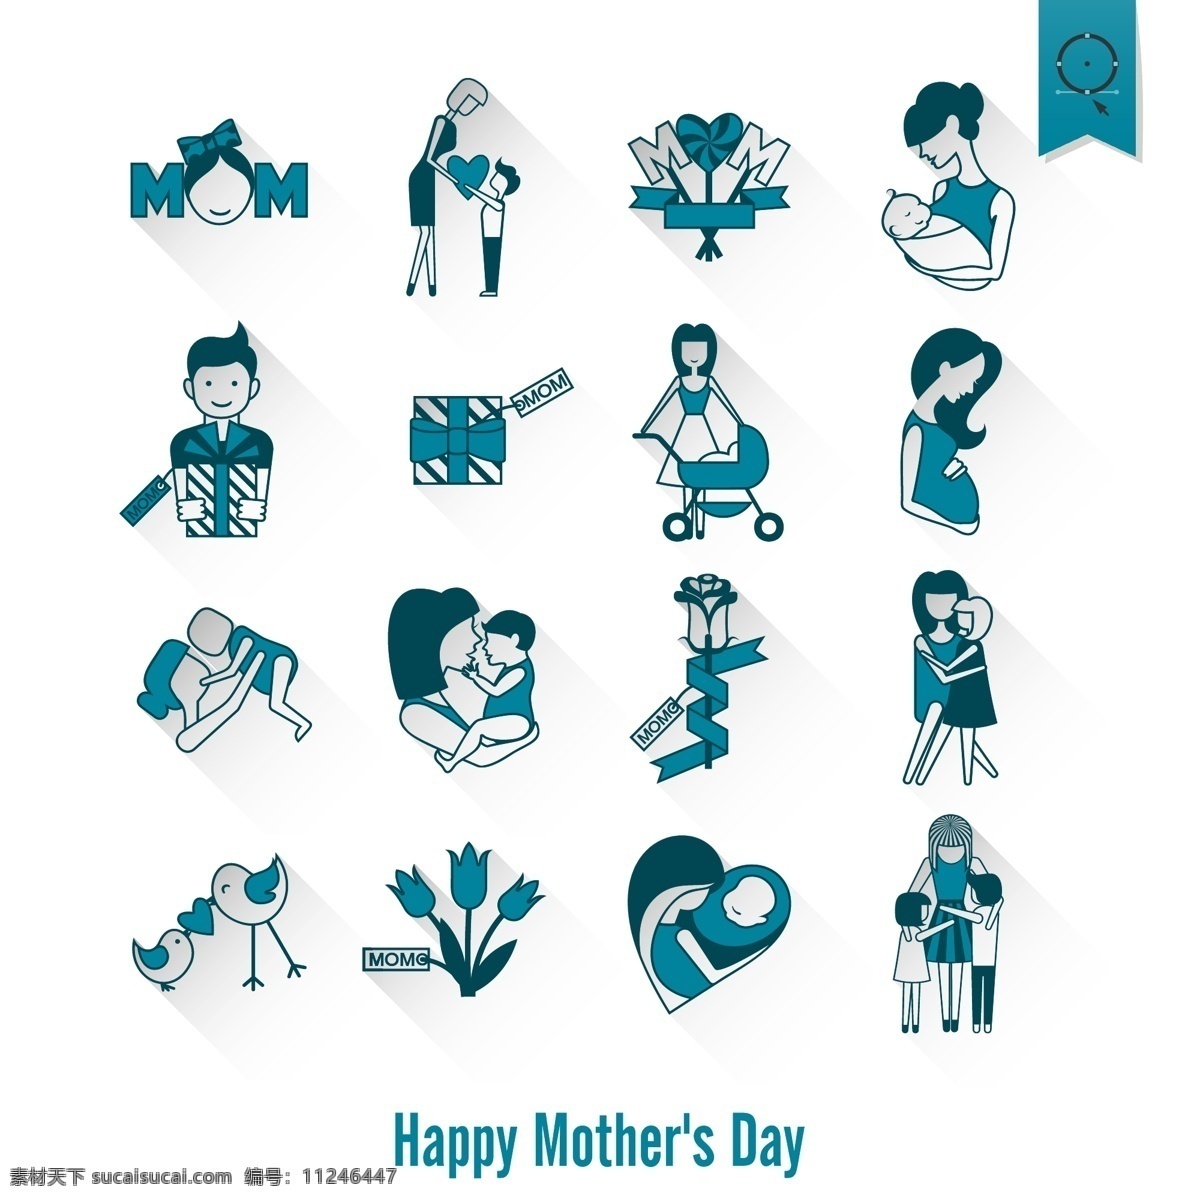 母亲节 节日 手绘 母子 婴儿 儿童 母亲节海报 母亲节设计 妈妈 母爱 慈母 节日庆祝 文化艺术 矢量 白色